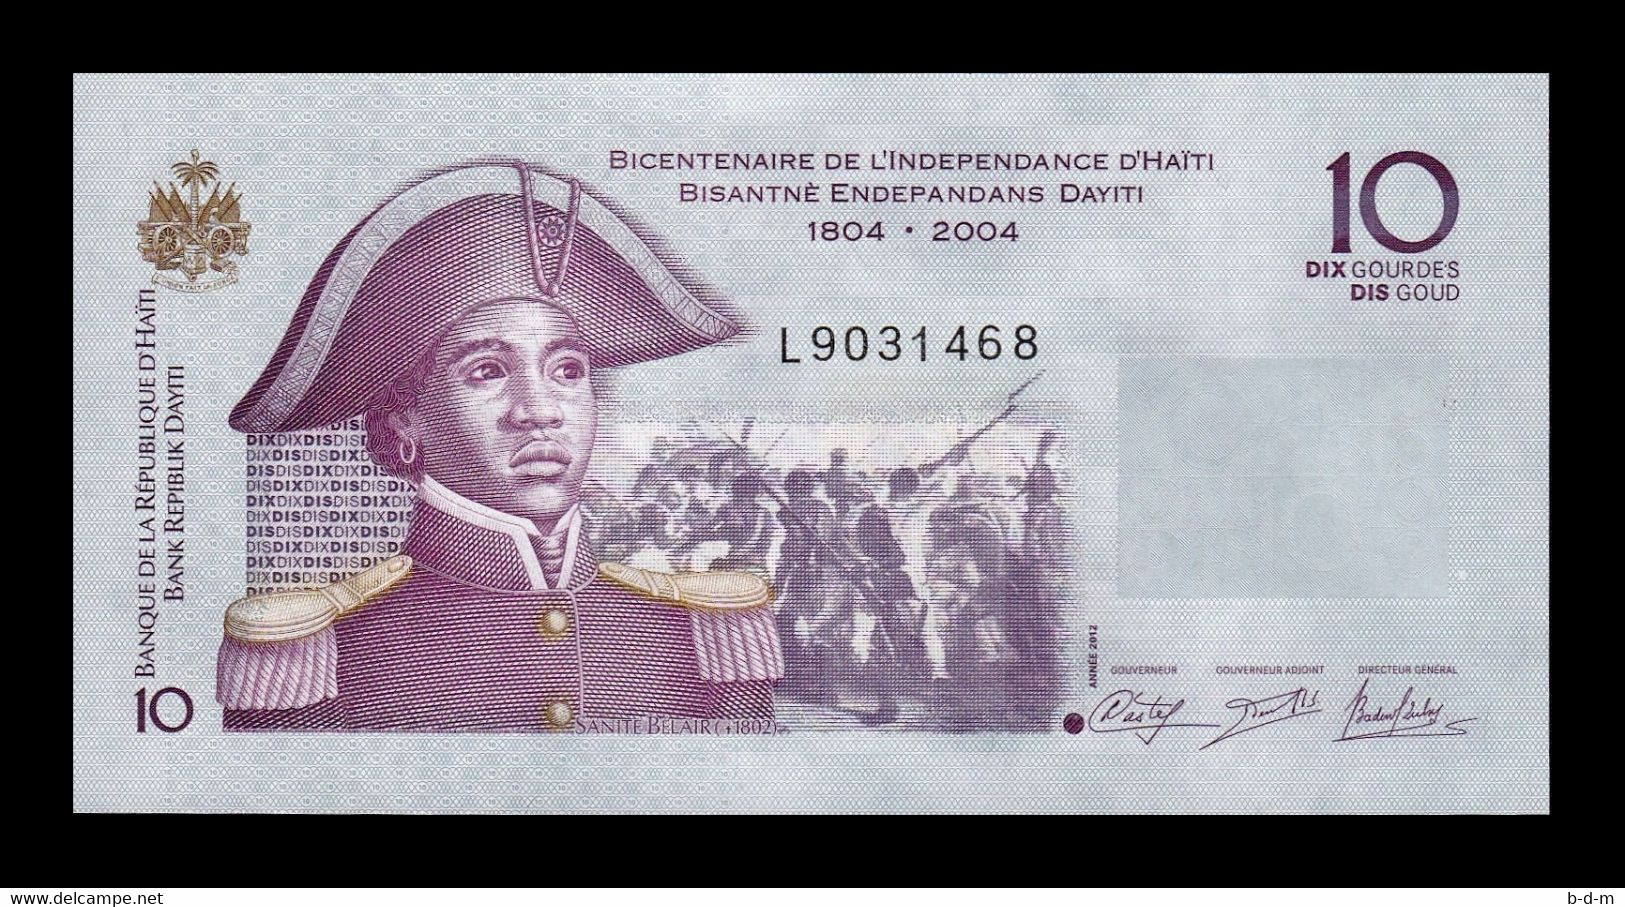 Haiti 10 Gourdes Commemorative 2012 Pick 272e SC UNC - Haïti